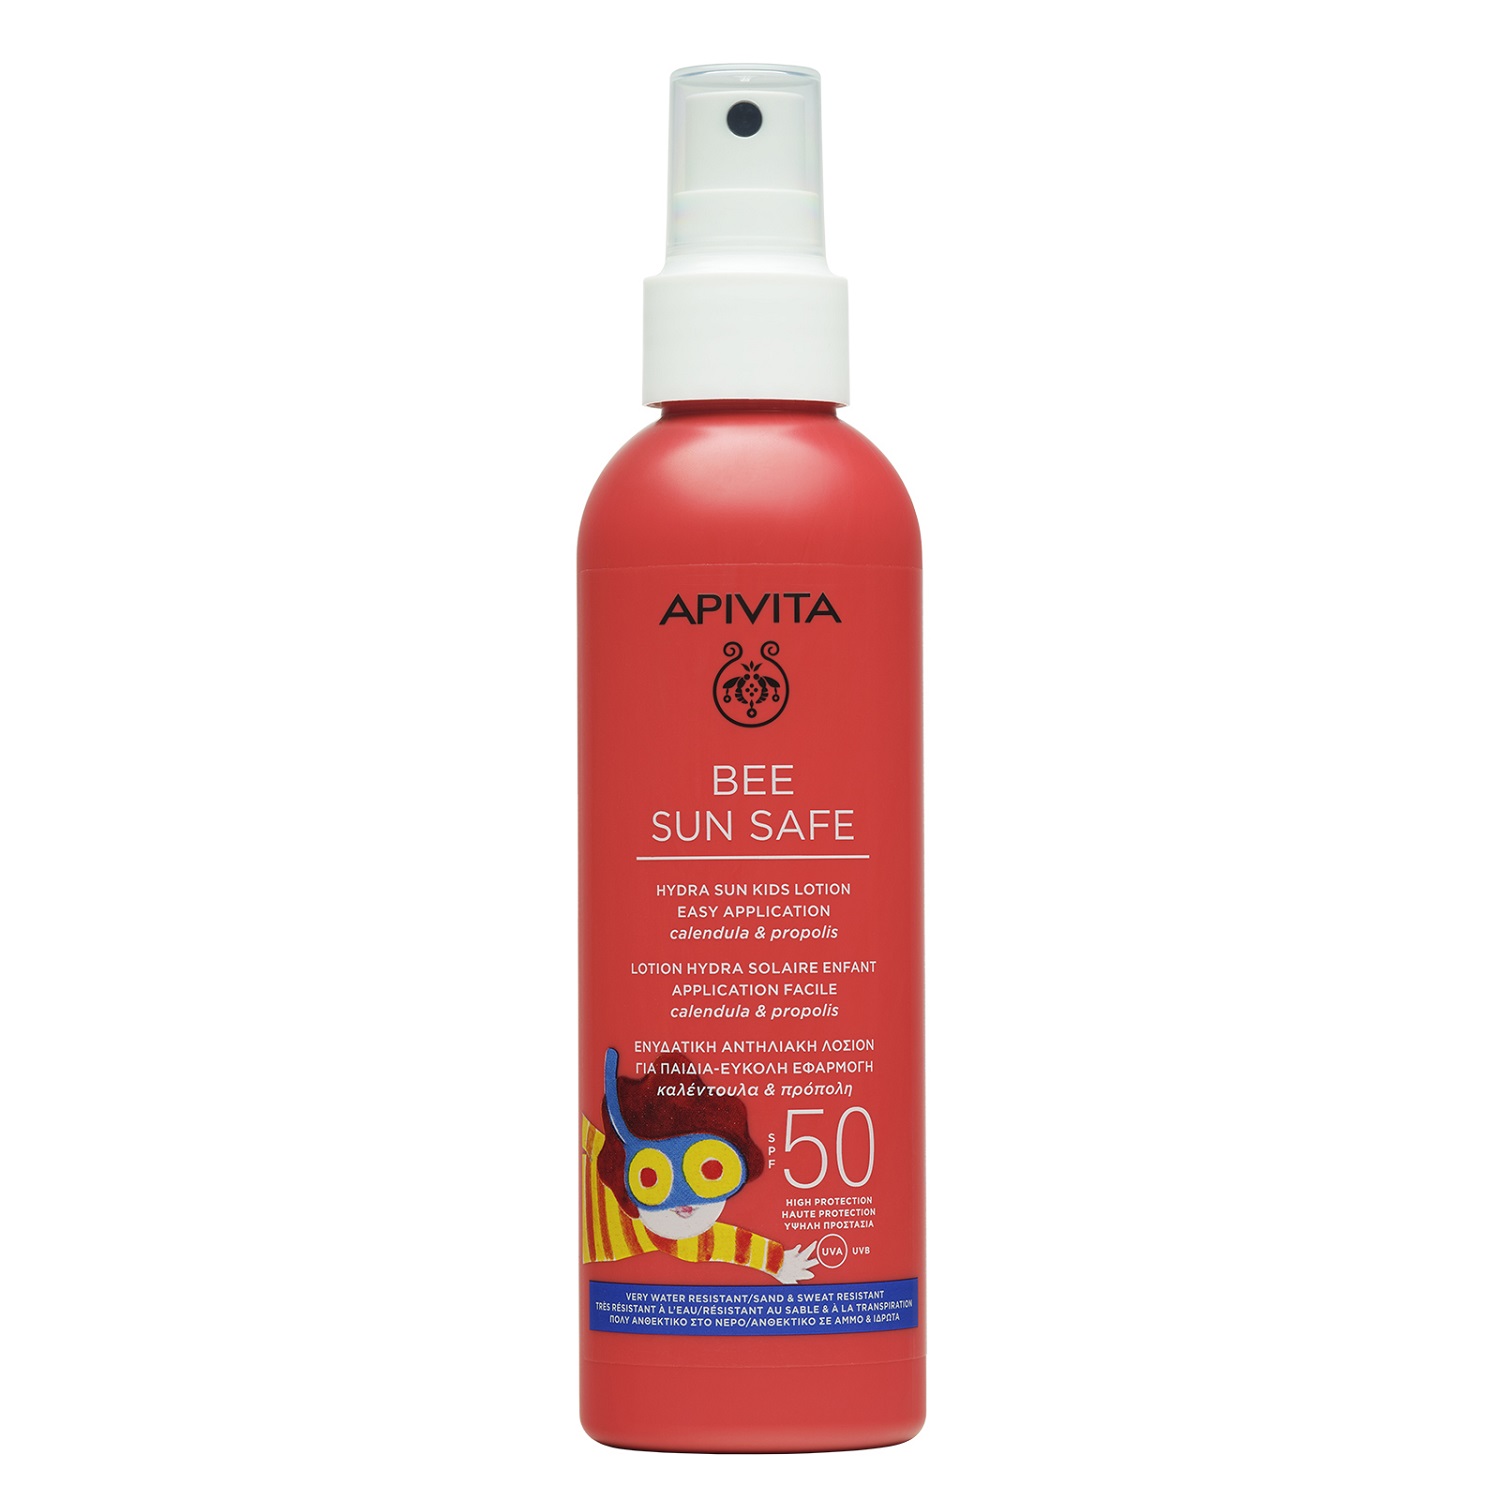 Апивита Солнцезащитный увлажняющий спрей с легким нанесением для детей SPF50, 200 мл (Apivita, Bee Sun Safe) фото 0